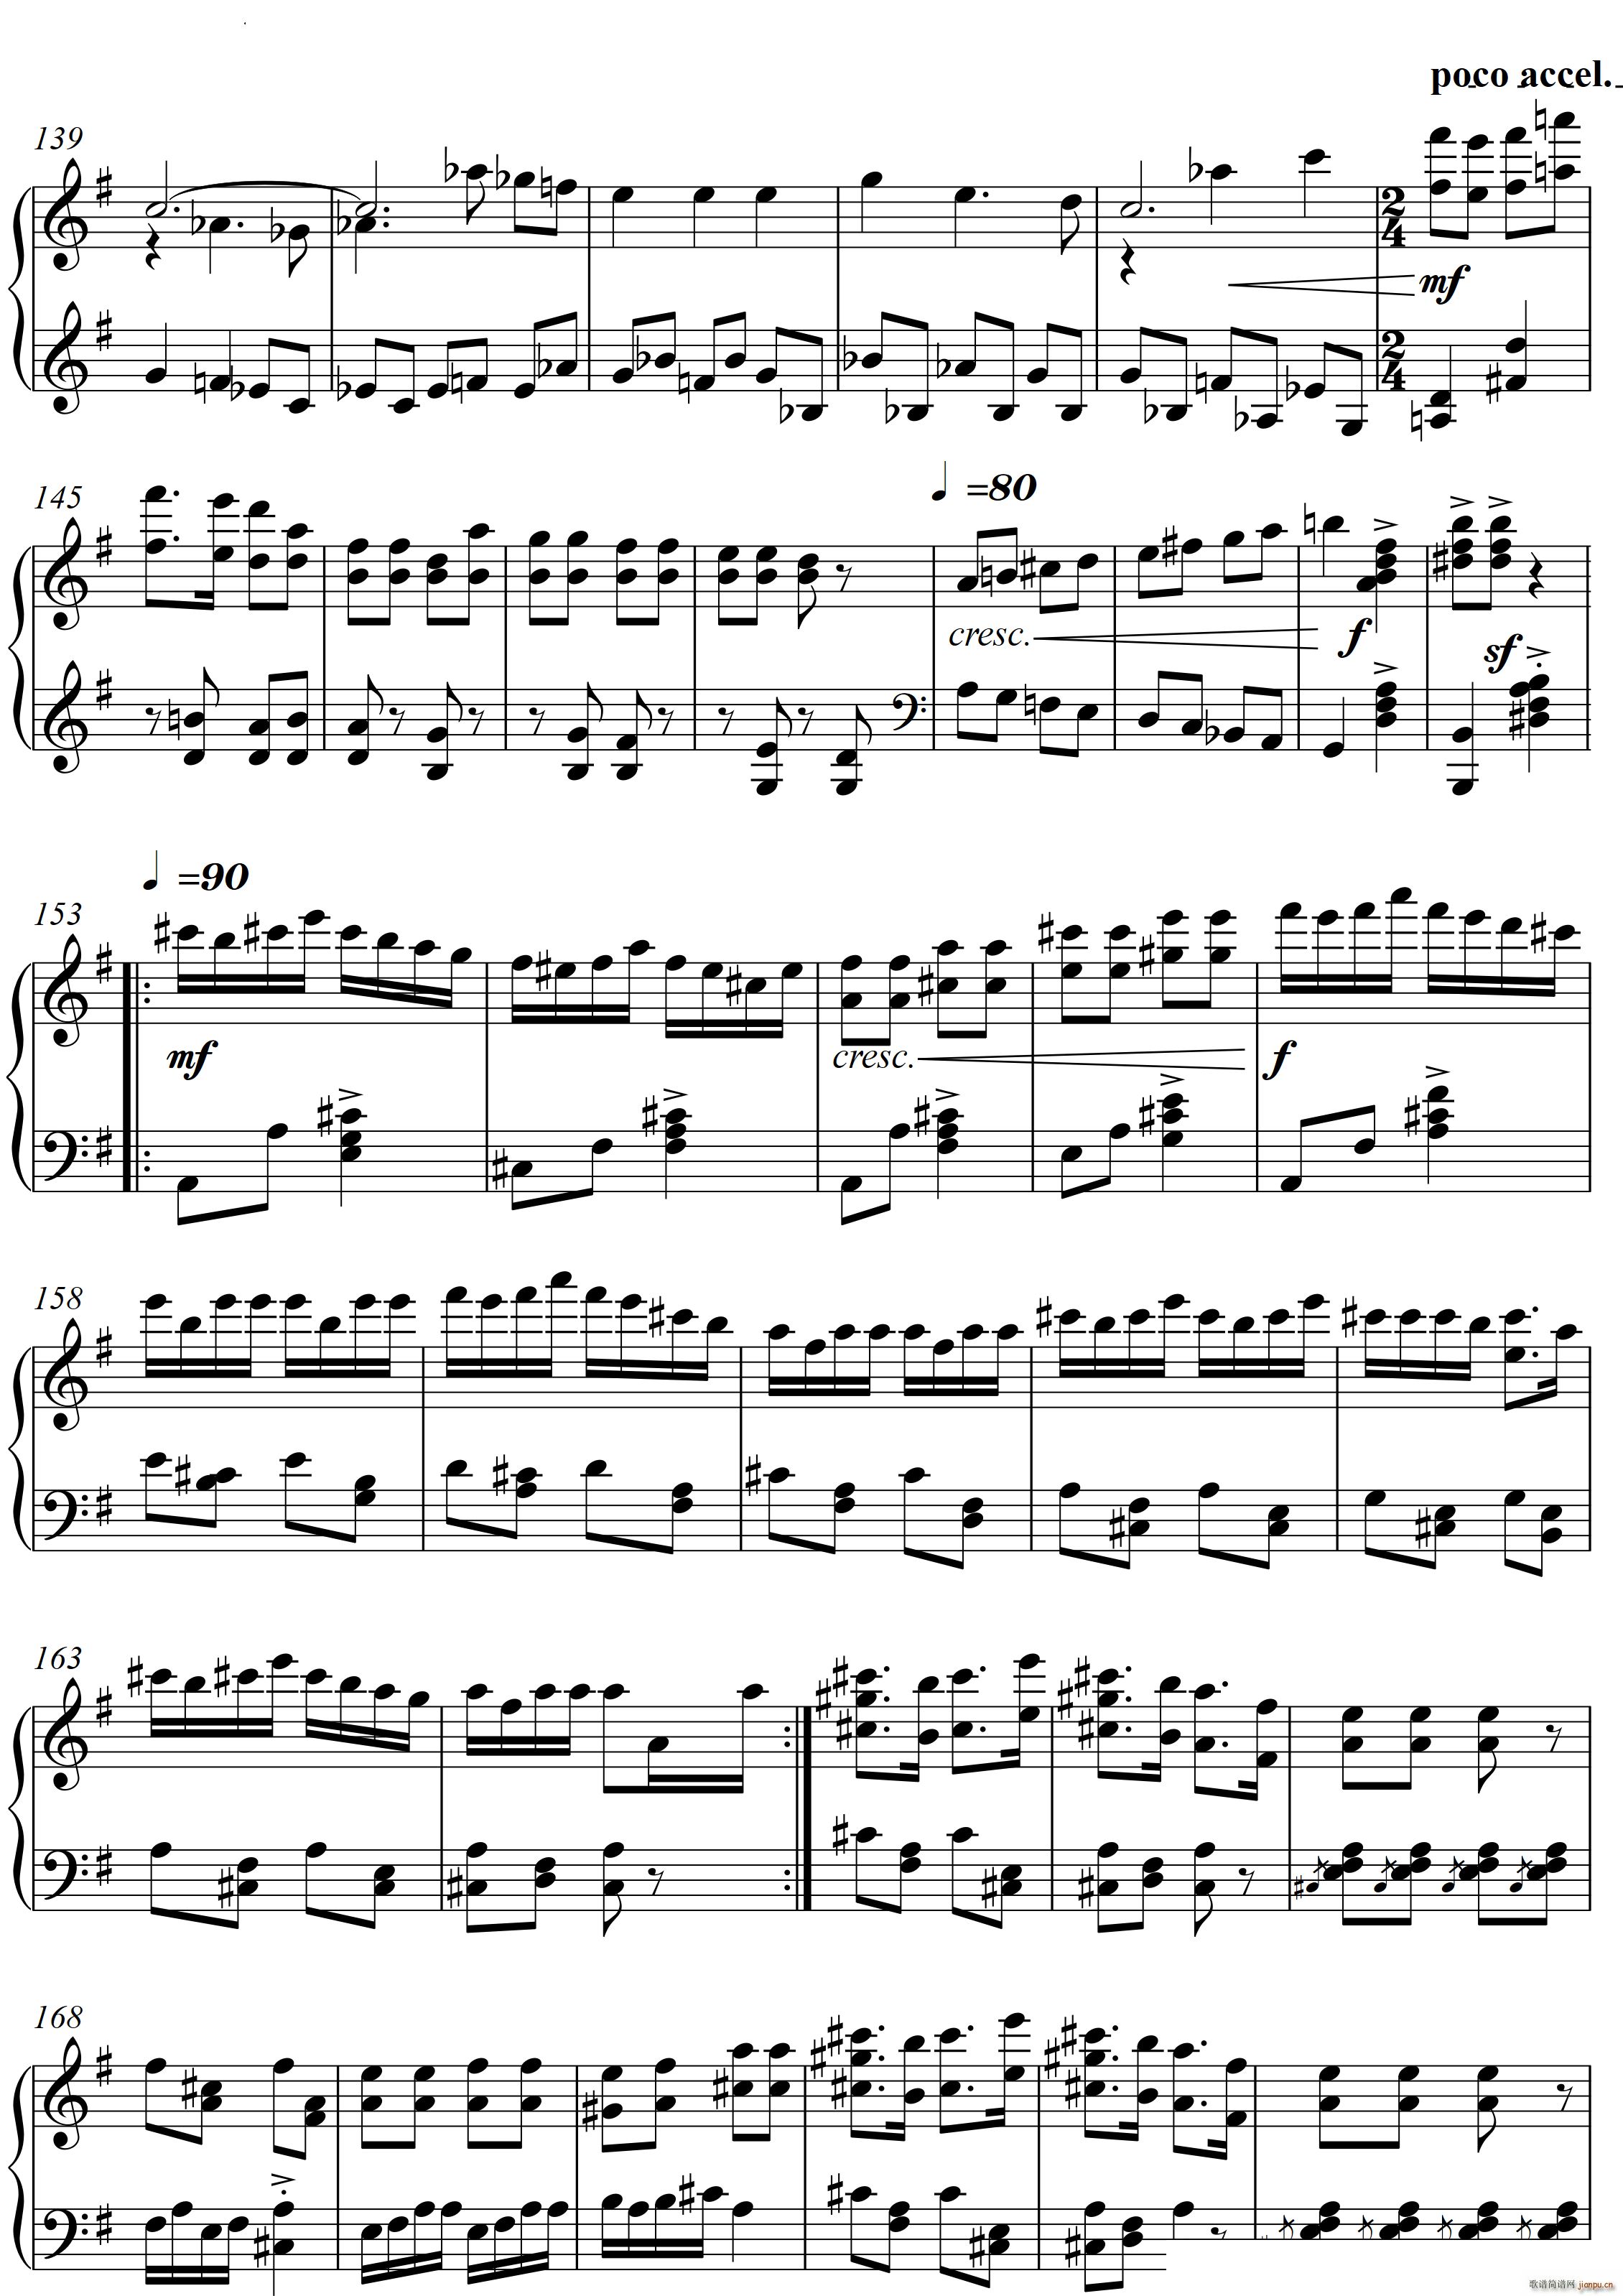 第22钢琴奏鸣曲 信仰 Piano Sonata No`22四个乐章(钢琴谱)33